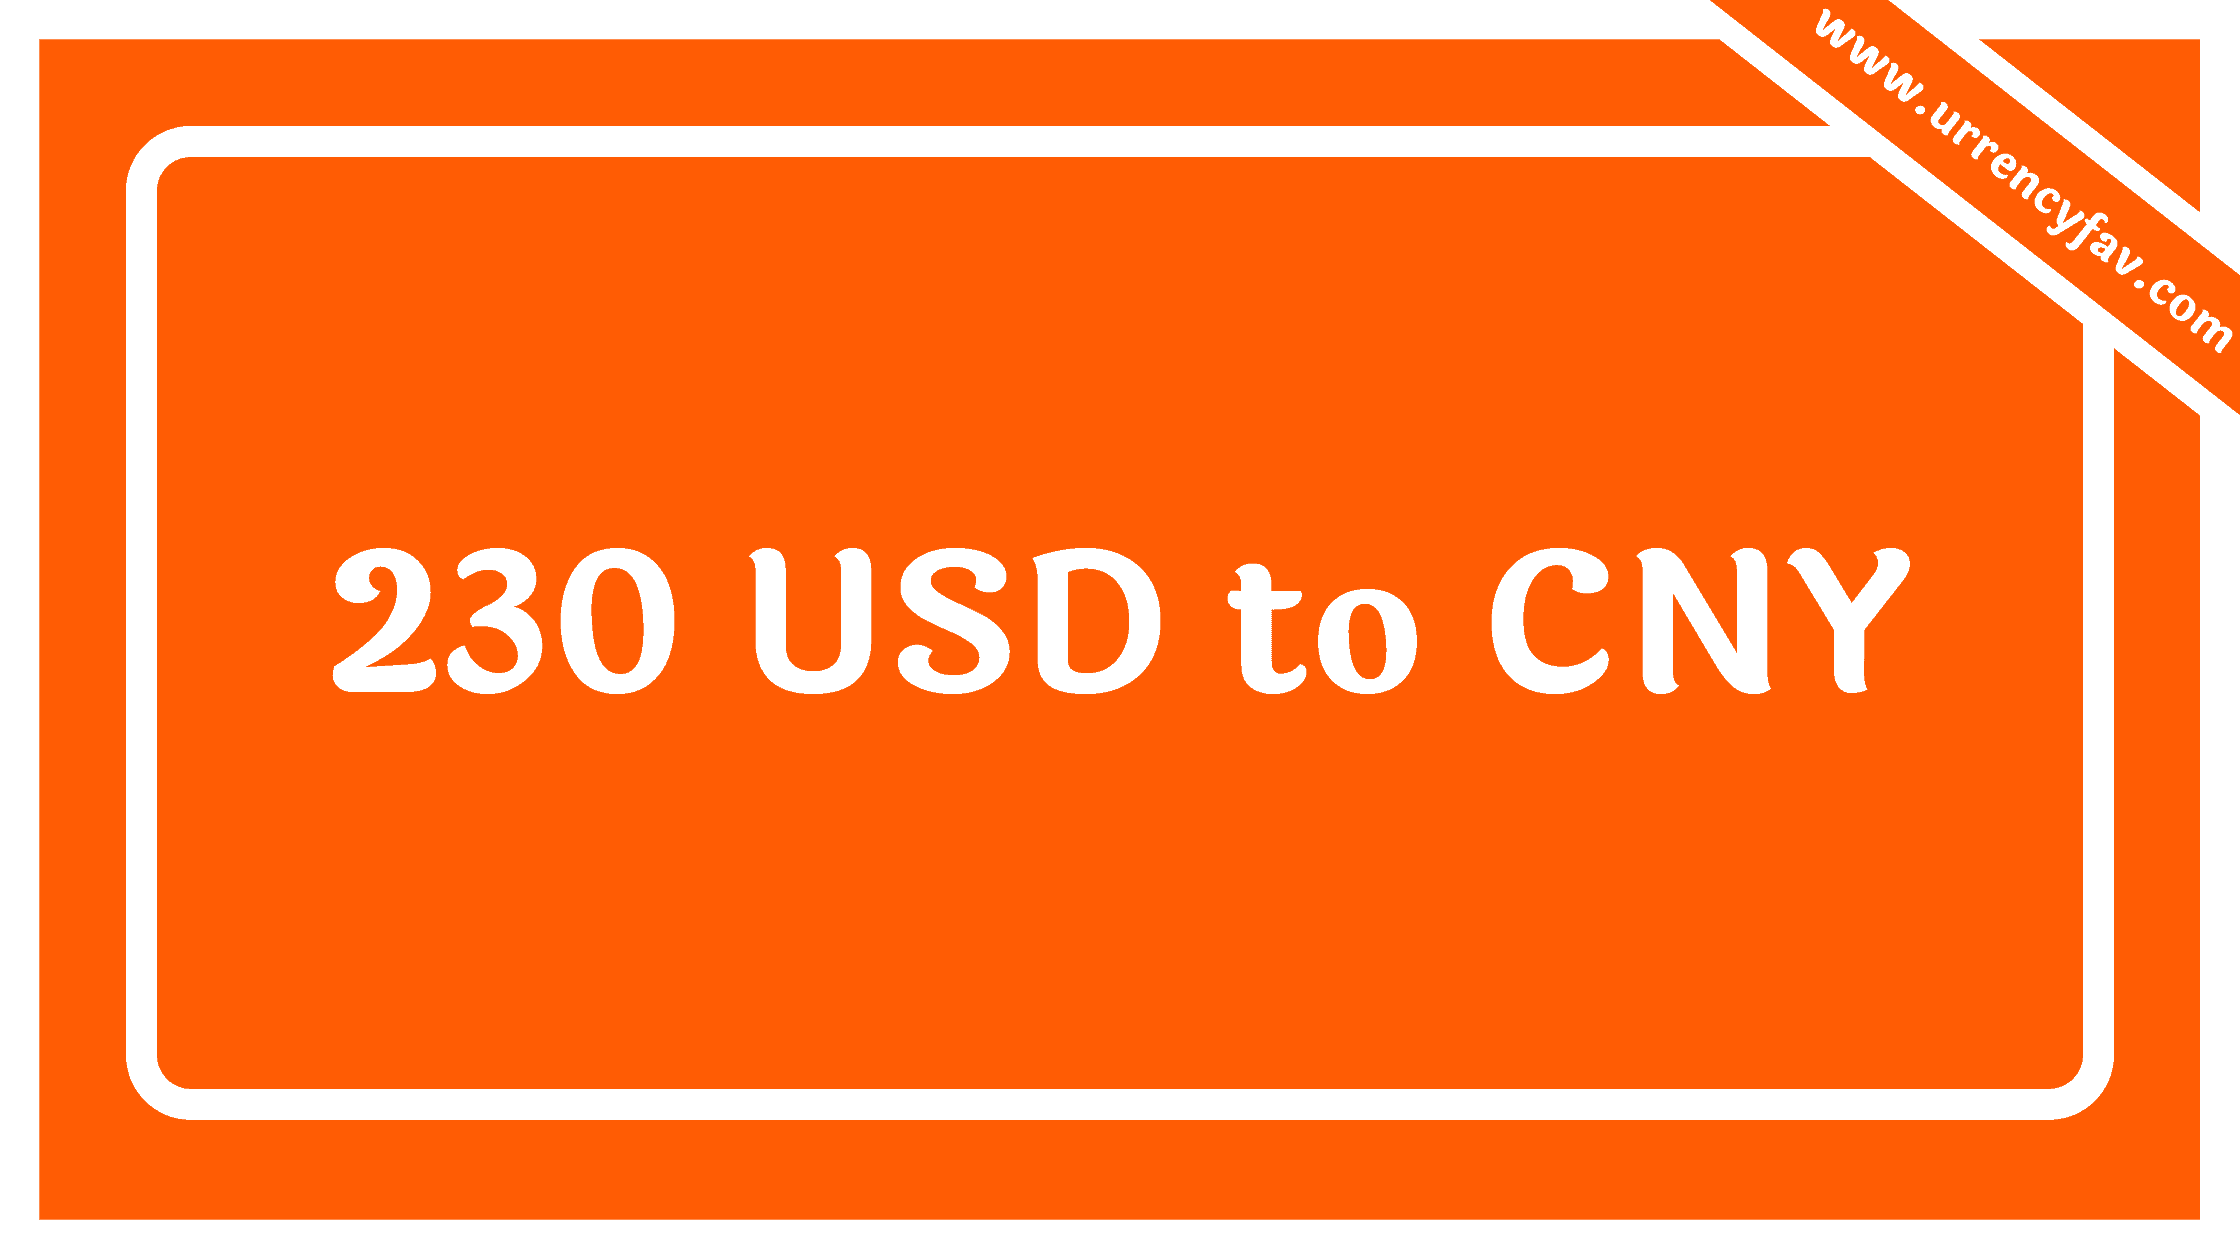 230 USD to CNY